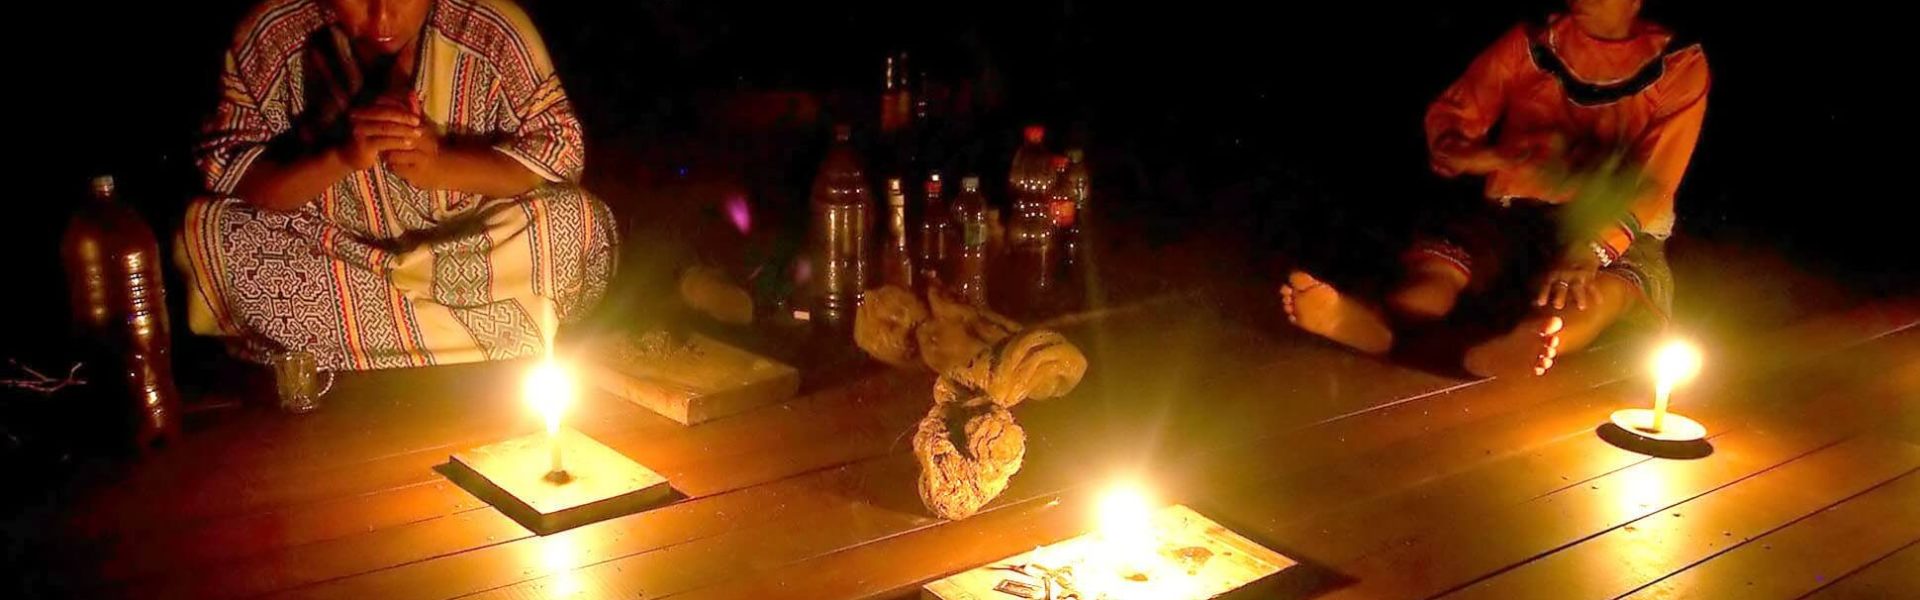 Ceremonia a la luz de las velas